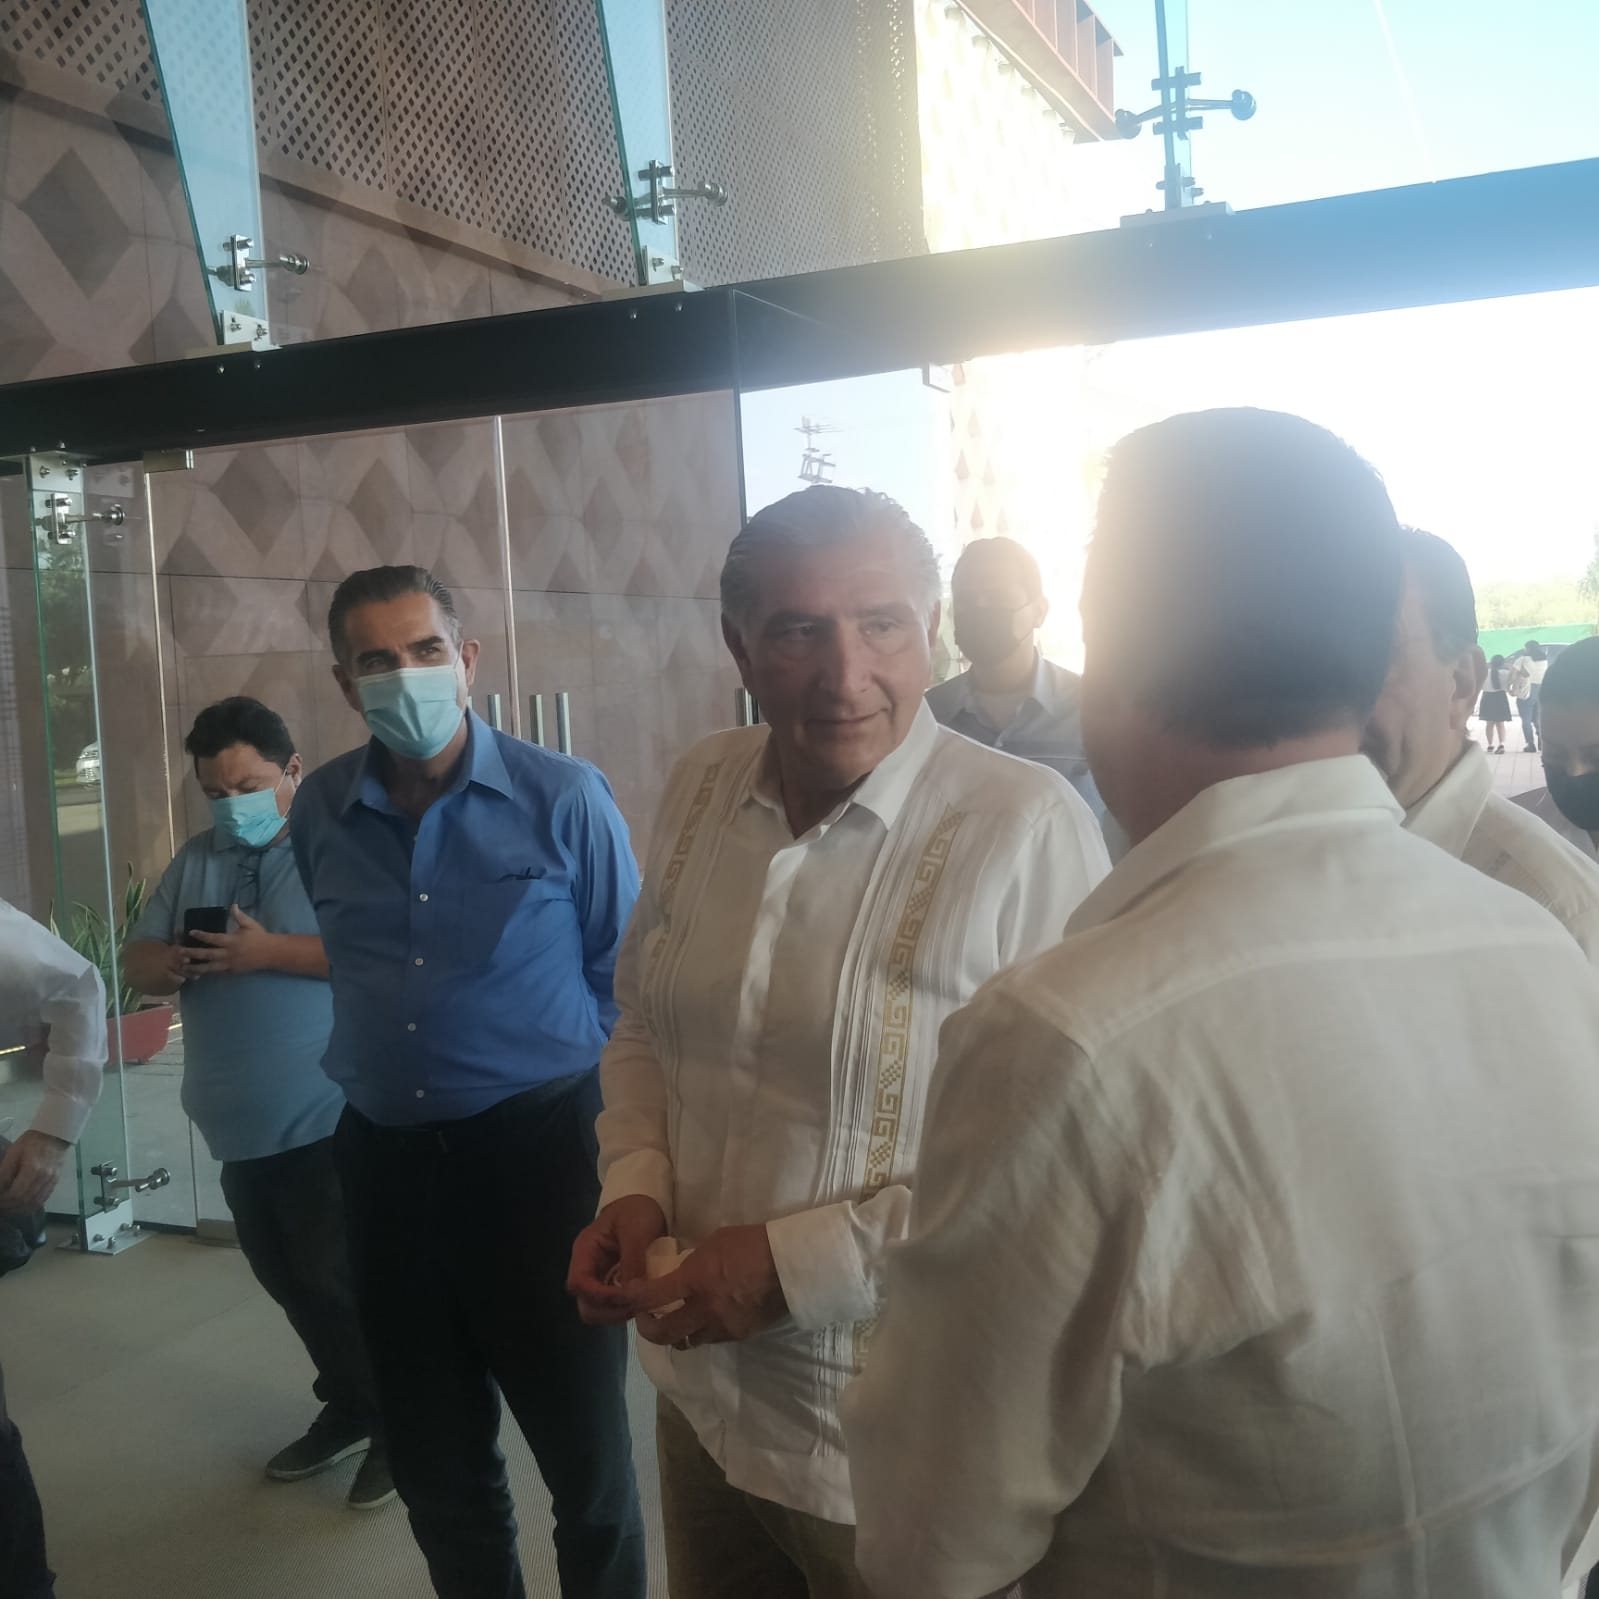 Adán Augusto, titular de la Segob, se reúne con empresarios en Mérida, Yucatán: EN VIVO